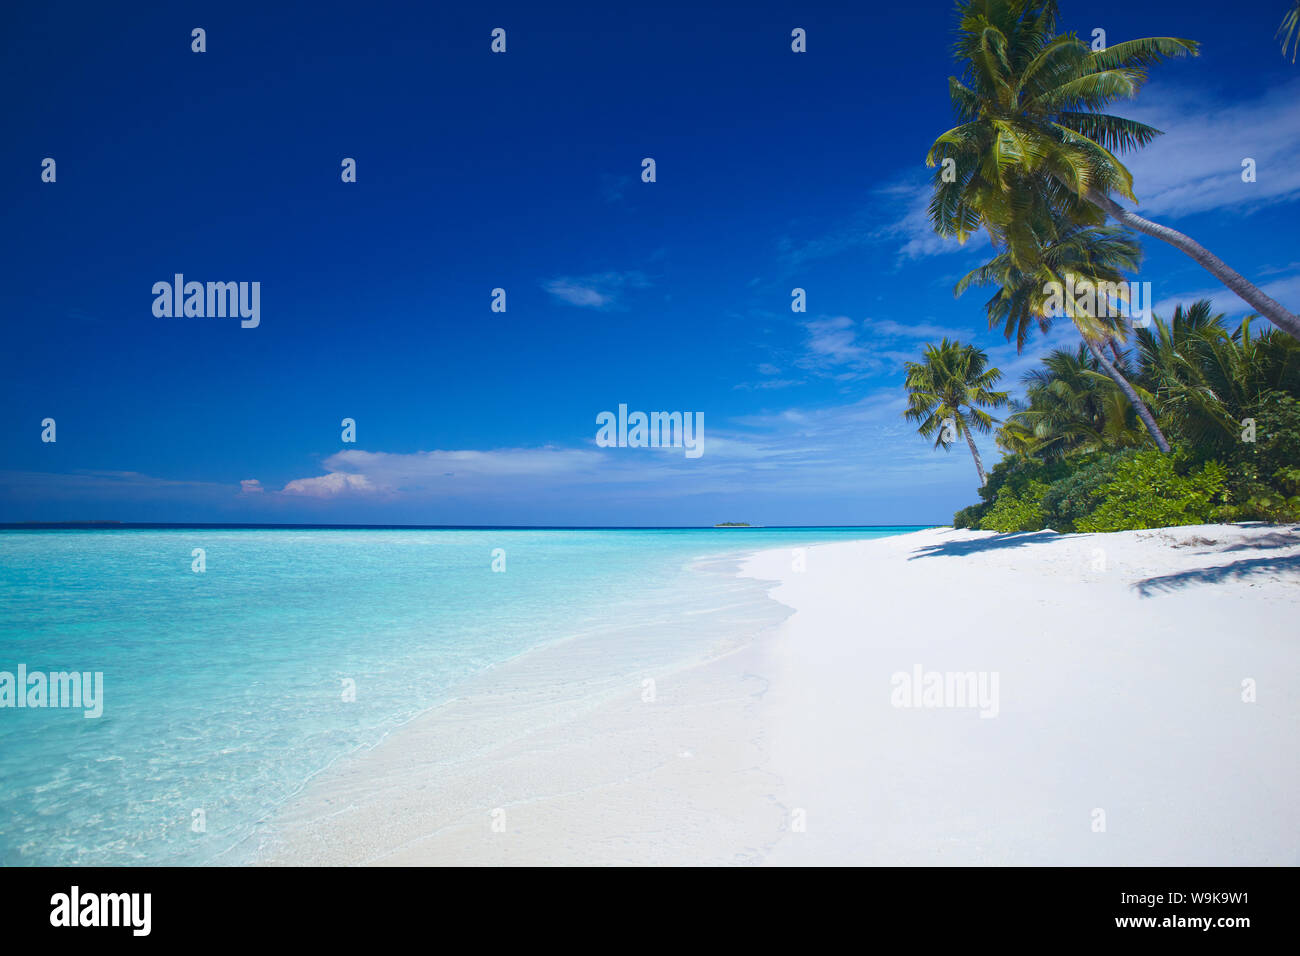 La plage et le lagon tropical, Maldives, océan Indien, Asie Banque D'Images